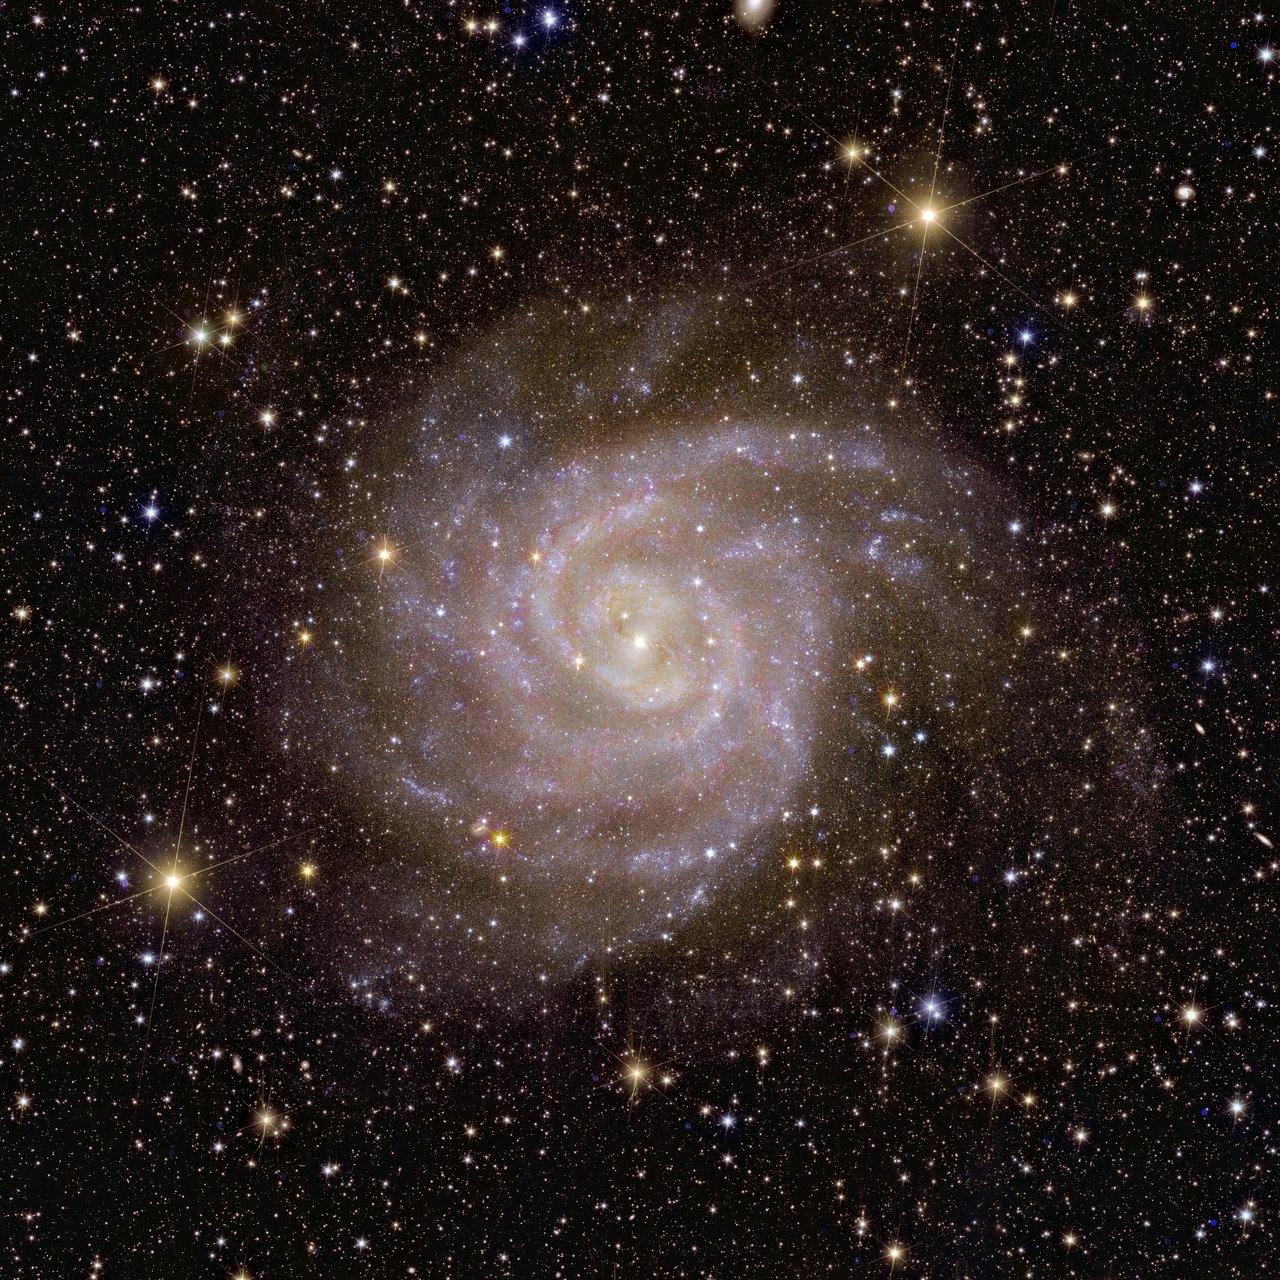 पृथ्वी से लगभग 11 मिलियन प्रकाश वर्ष दूर स्थित सर्पिल आकाशगंगा आईसी 342, आकाशगंगा के भीड़ भरे विमान के पीछे स्थित है: धूल, गैस और तारे इसे हमारे दृष्टिकोण से अस्पष्ट कर देते हैं। यूक्लिड ने धूल में झाँकने और उसका अध्ययन करने के लिए अपने निकट-अवरक्त उपकरण का उपयोग किया।